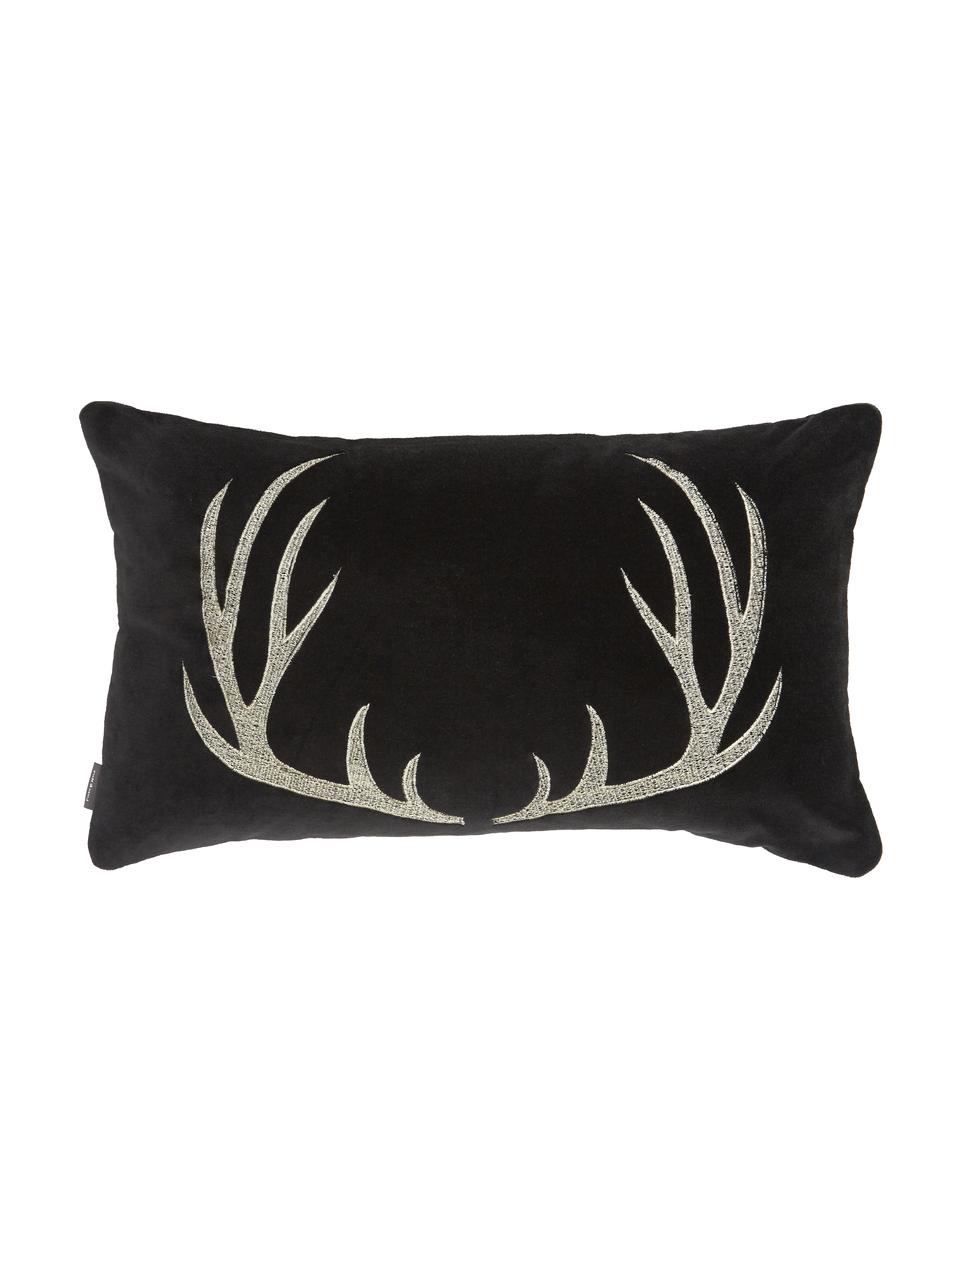 Cuscino in velluto nero ricamato con motivo cervo Antler, Rivestimento: 100% velluto di cotone, Nero, beige, Larg. 30 x Lung. 50 cm